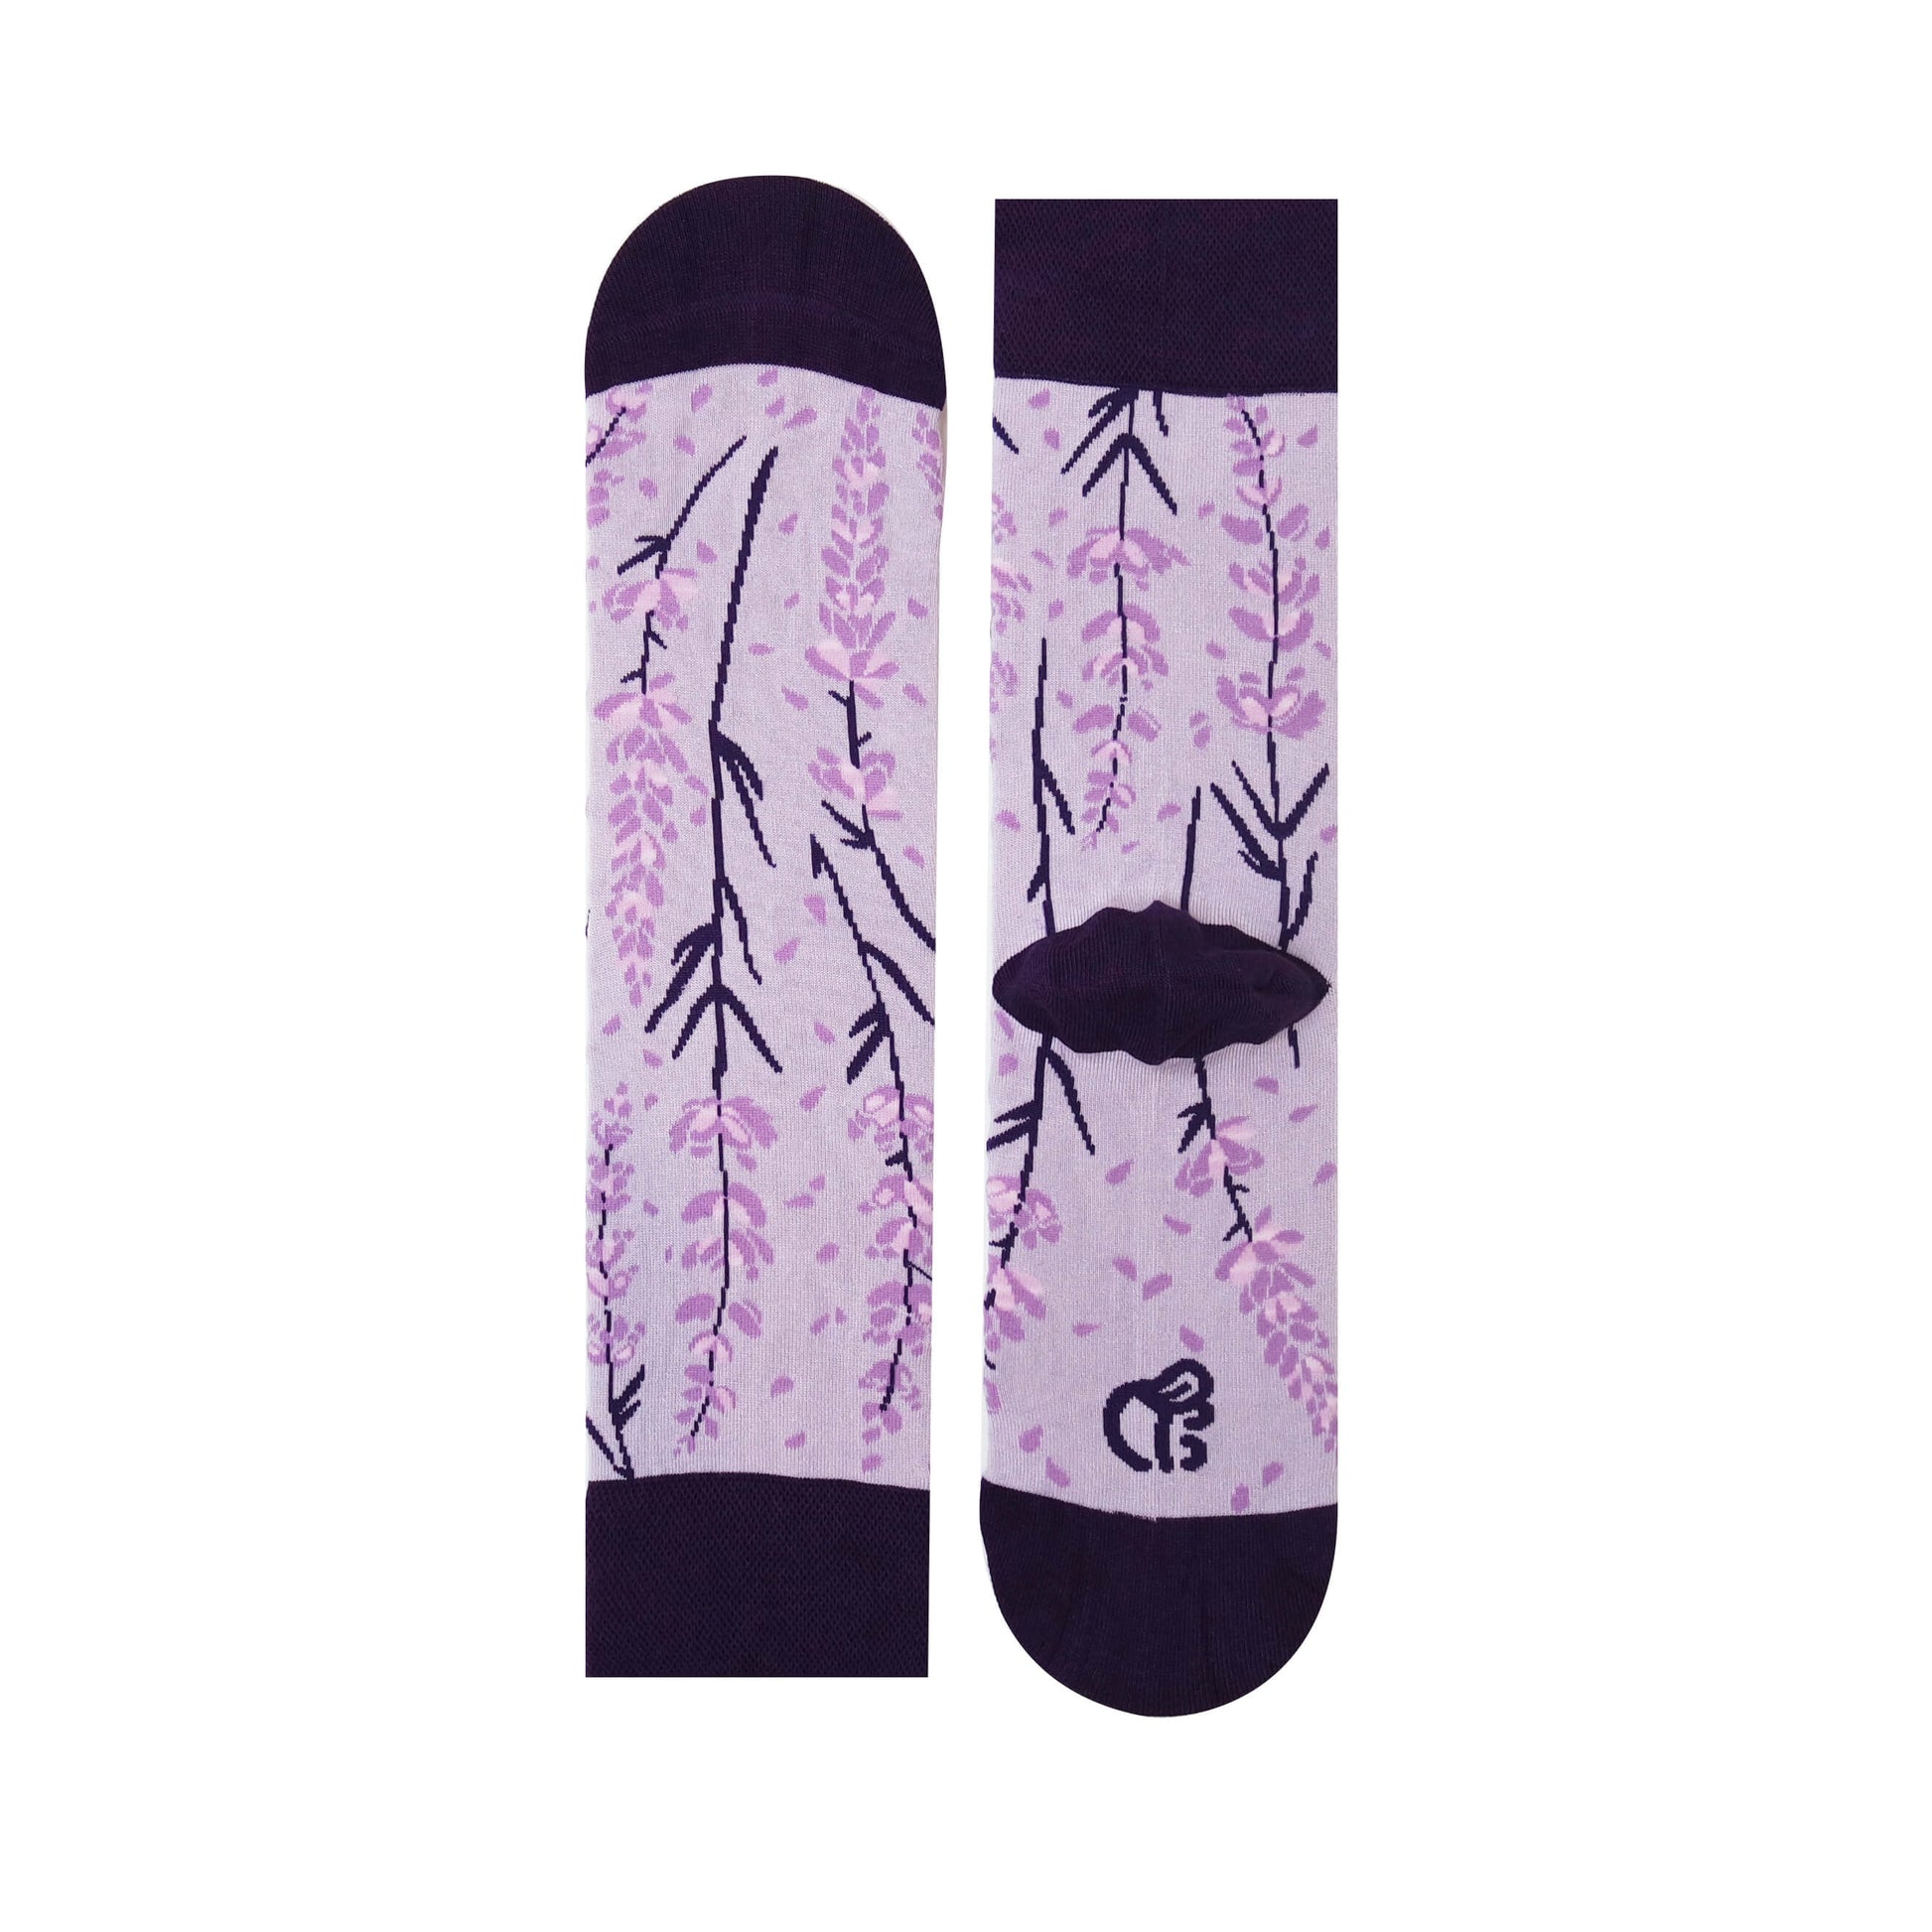 Unisex Purple-Lilac Floral Crew Socks - Sockmate